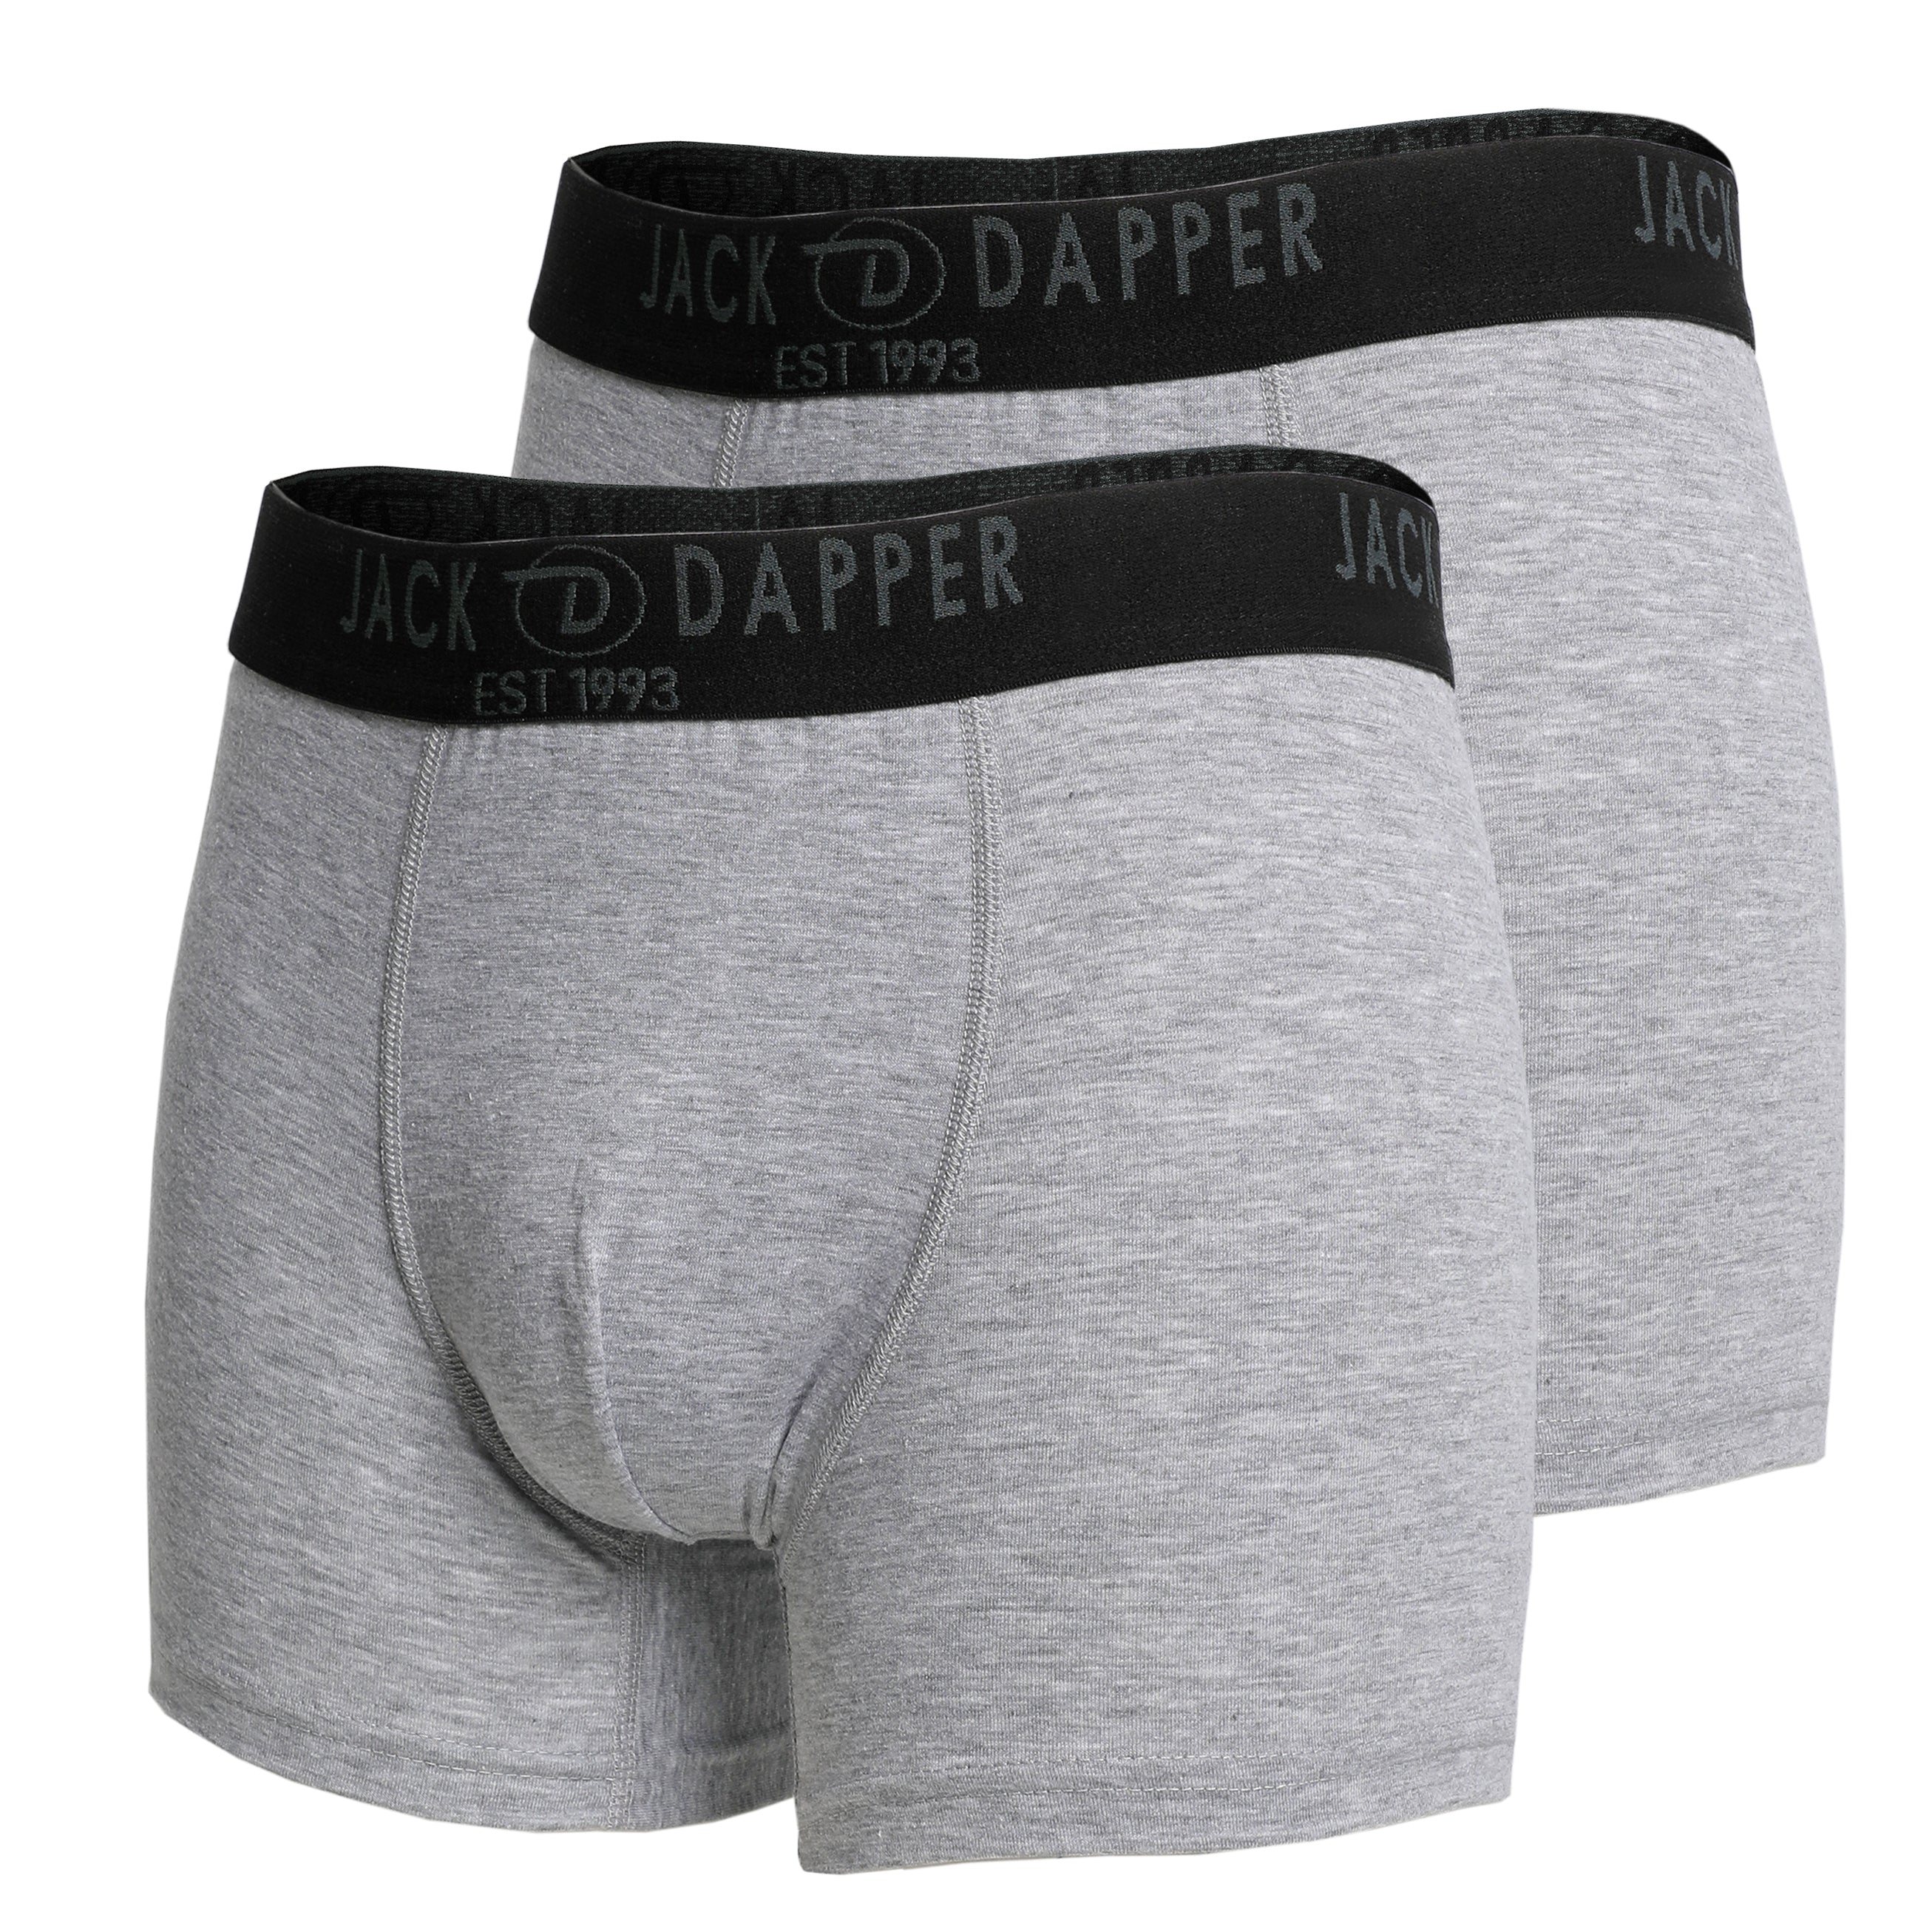 Jack Dapper Grey 2-Piece Cotton Underwear